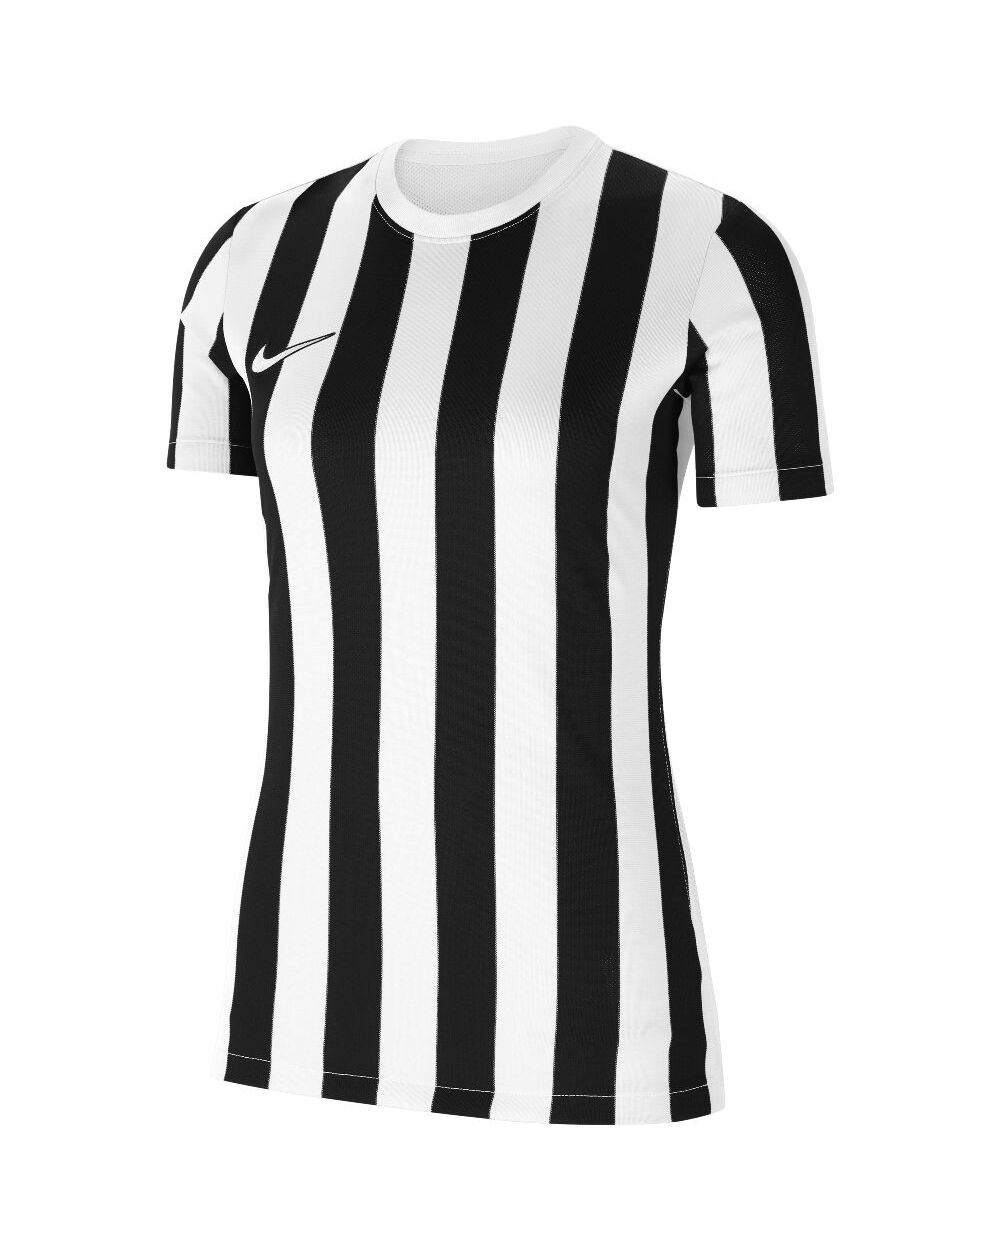 Nike Maglia Striped Division IV Bianco e Nero per Donne CW3816-100 S